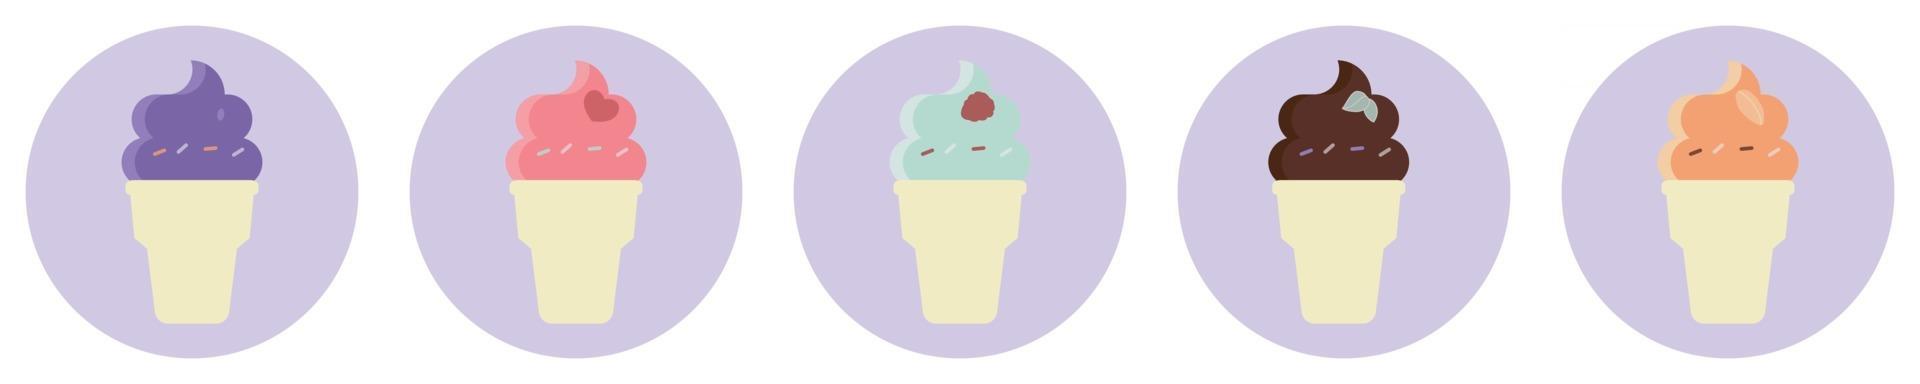 Illustration de la crème glacée colorée isolé sur fond blanc vecteur